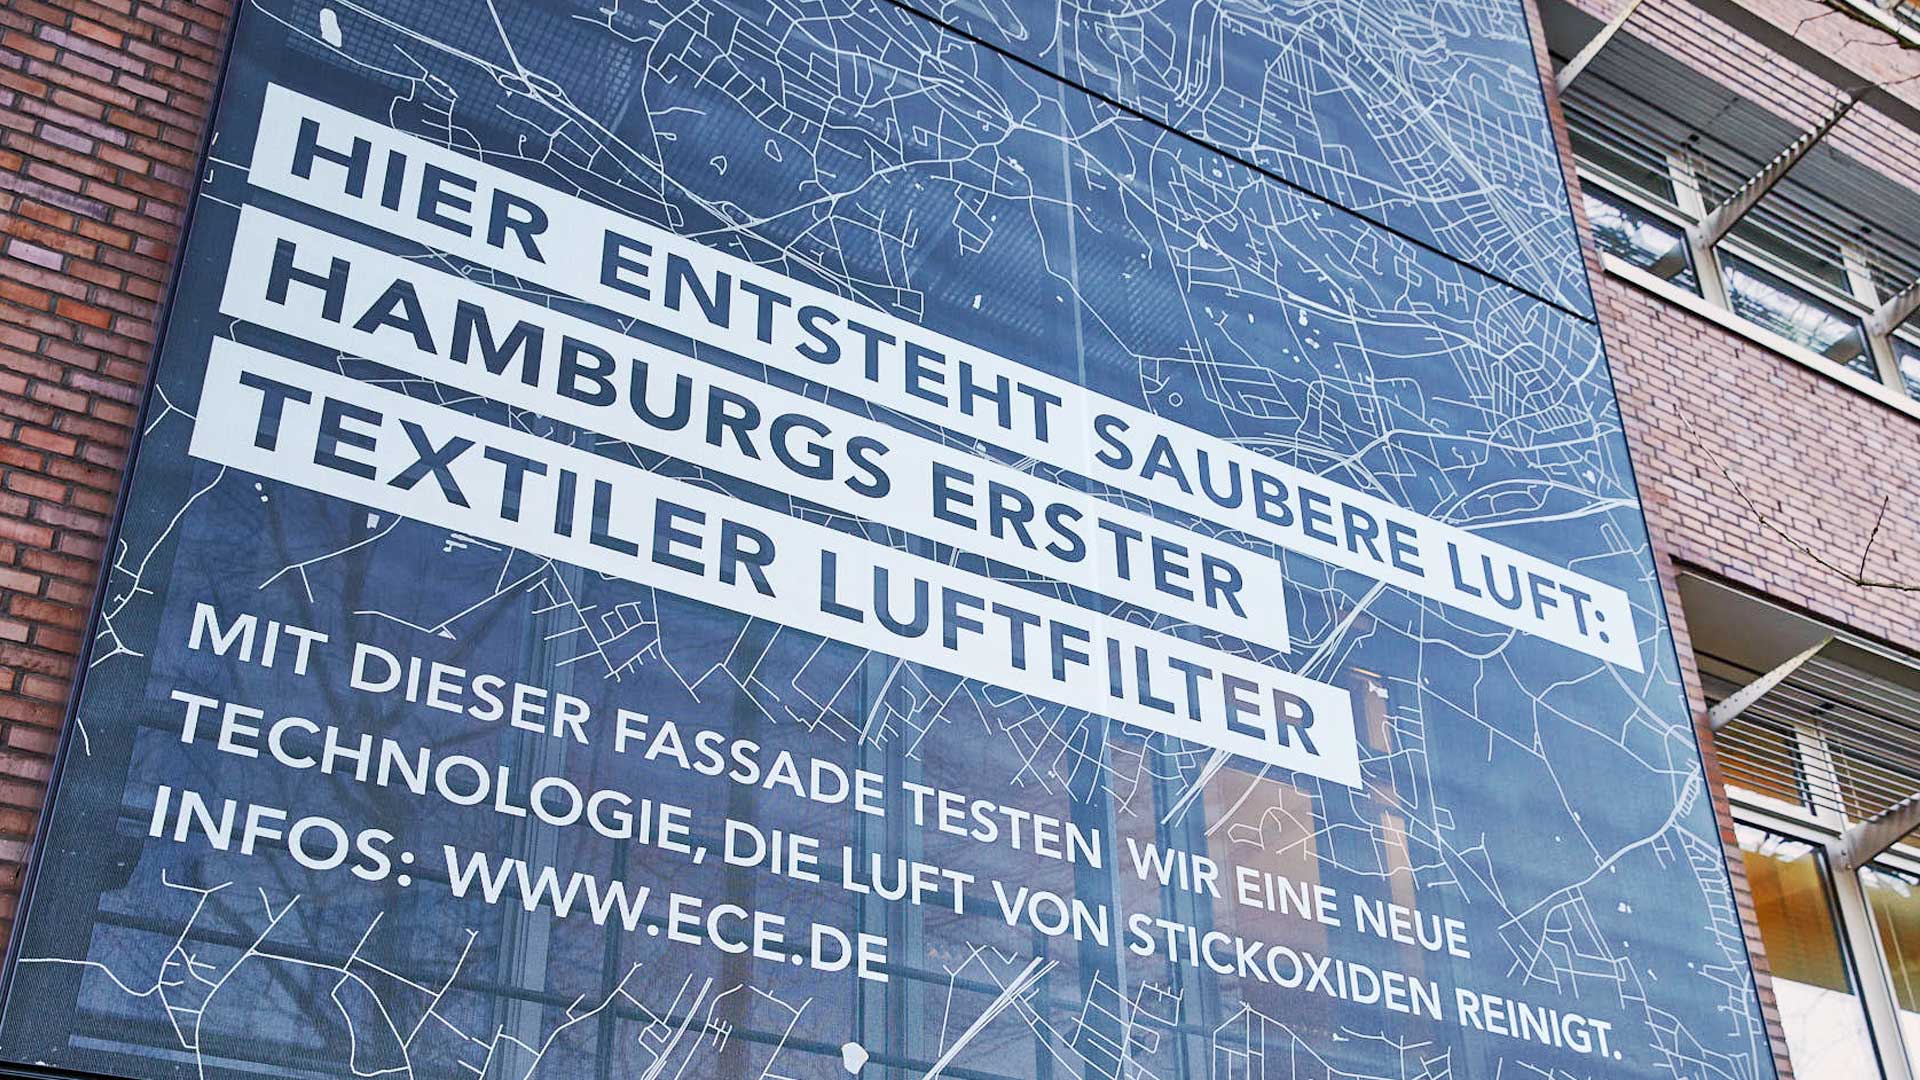 Hamburgs erster textiler Luftfilter